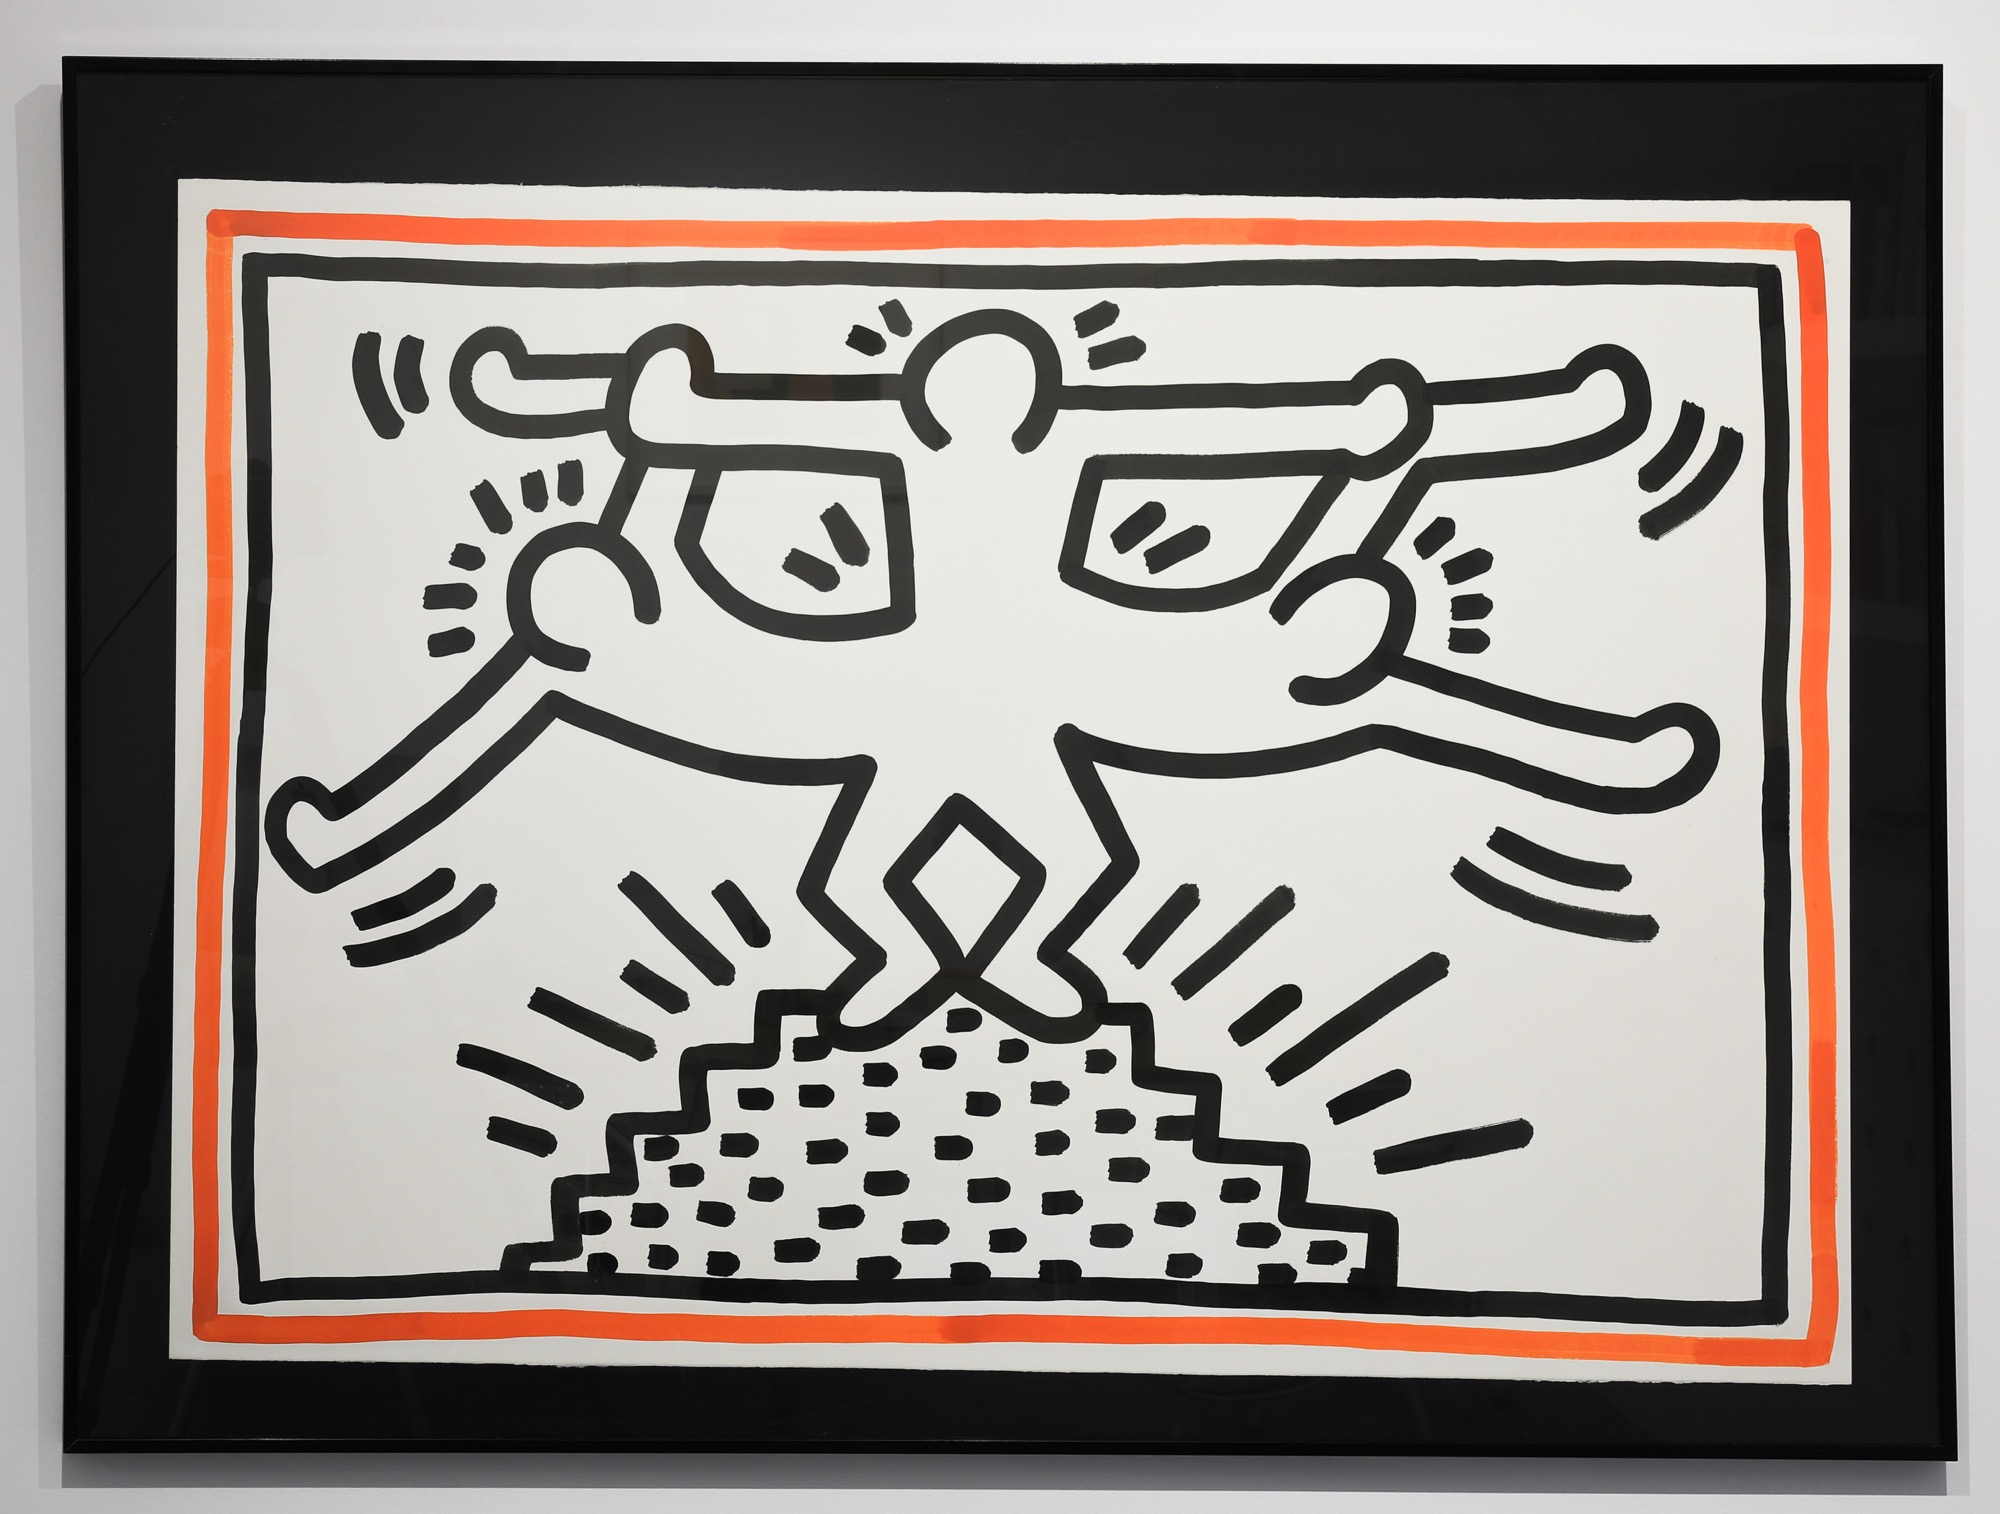 Keith Haring
